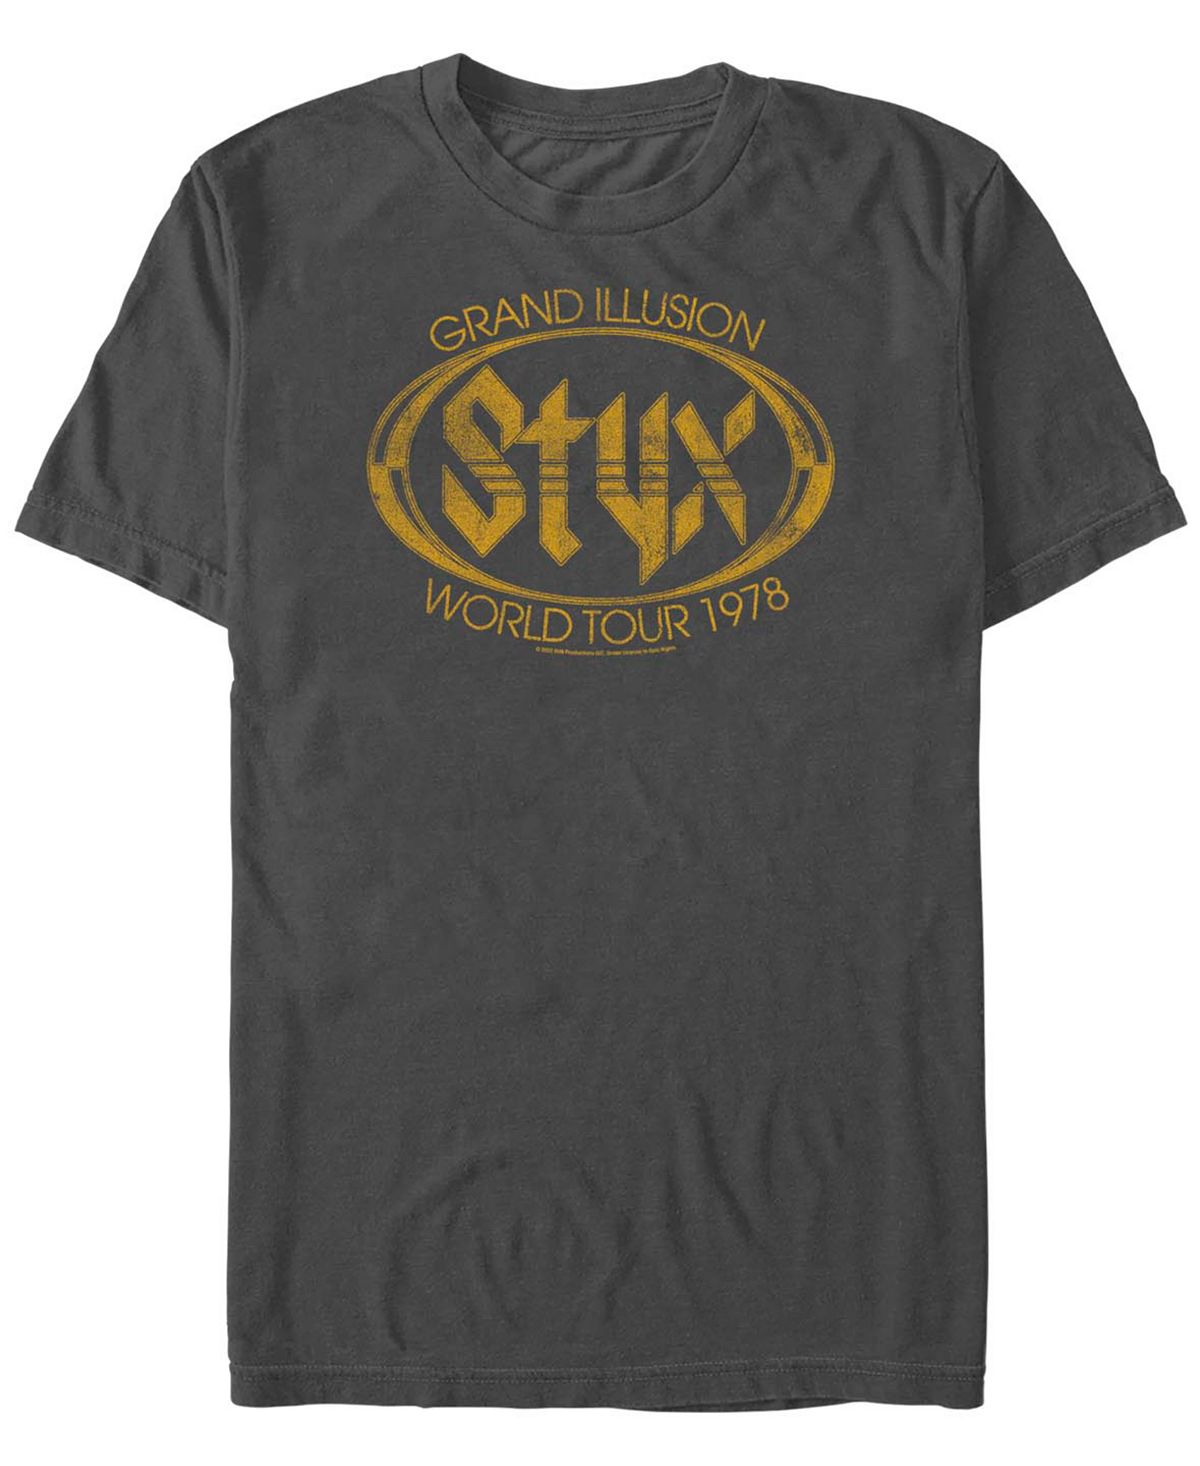 Мужская футболка styx tour с коротким рукавом Fifth Sun, мульти